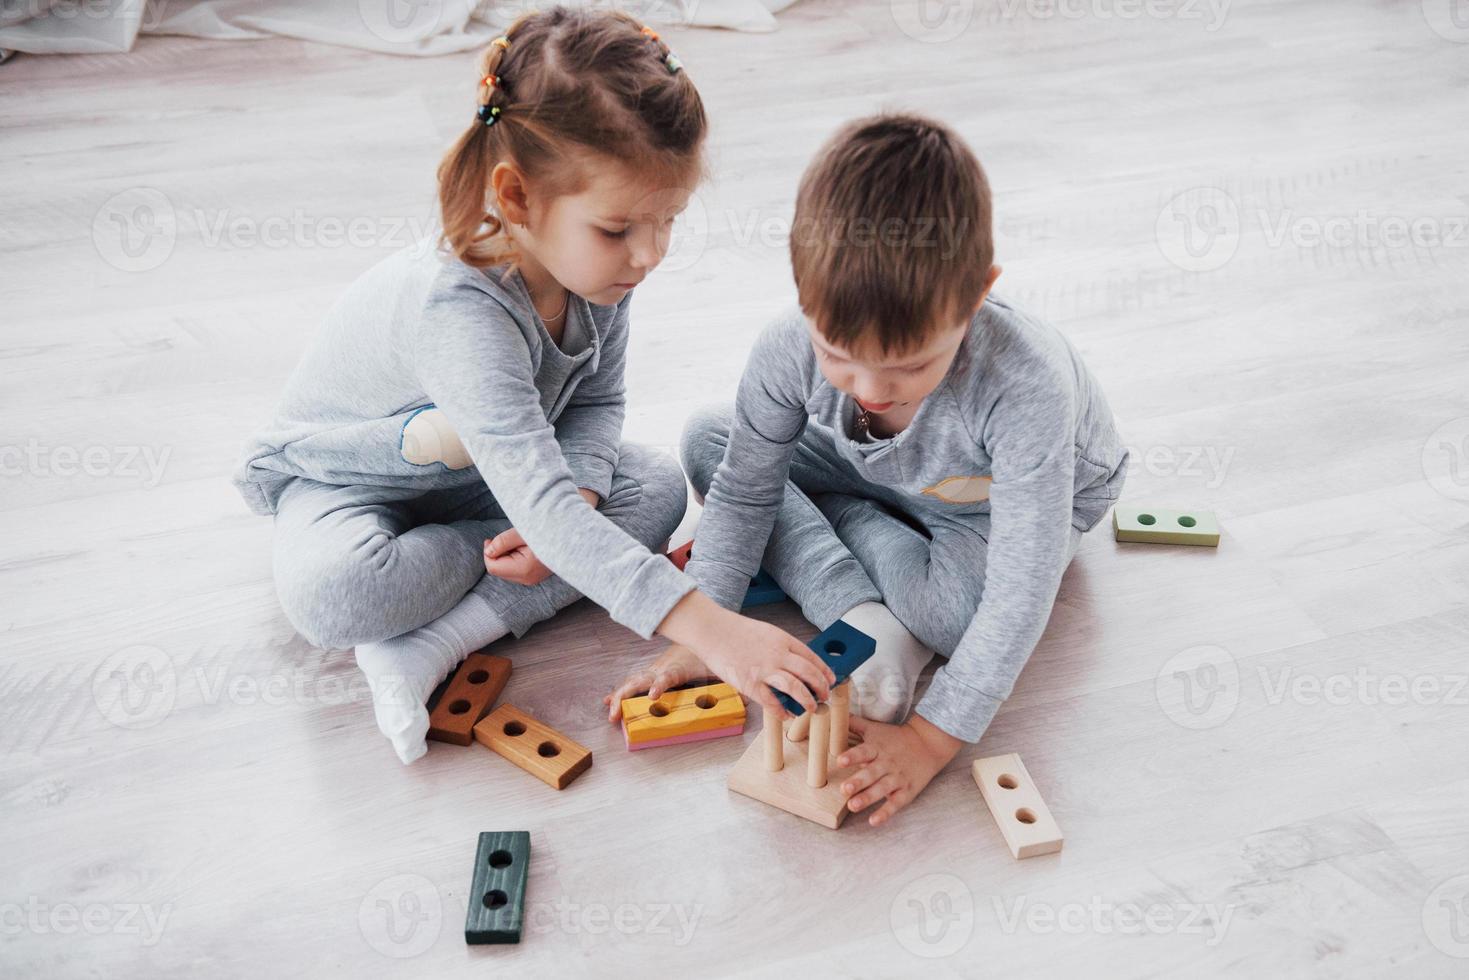 Kinder spielen mit einem Spielzeugdesigner auf dem Boden des Kinderzimmers. zwei Kinder spielen mit bunten Blöcken. Lernspiele im Kindergarten foto